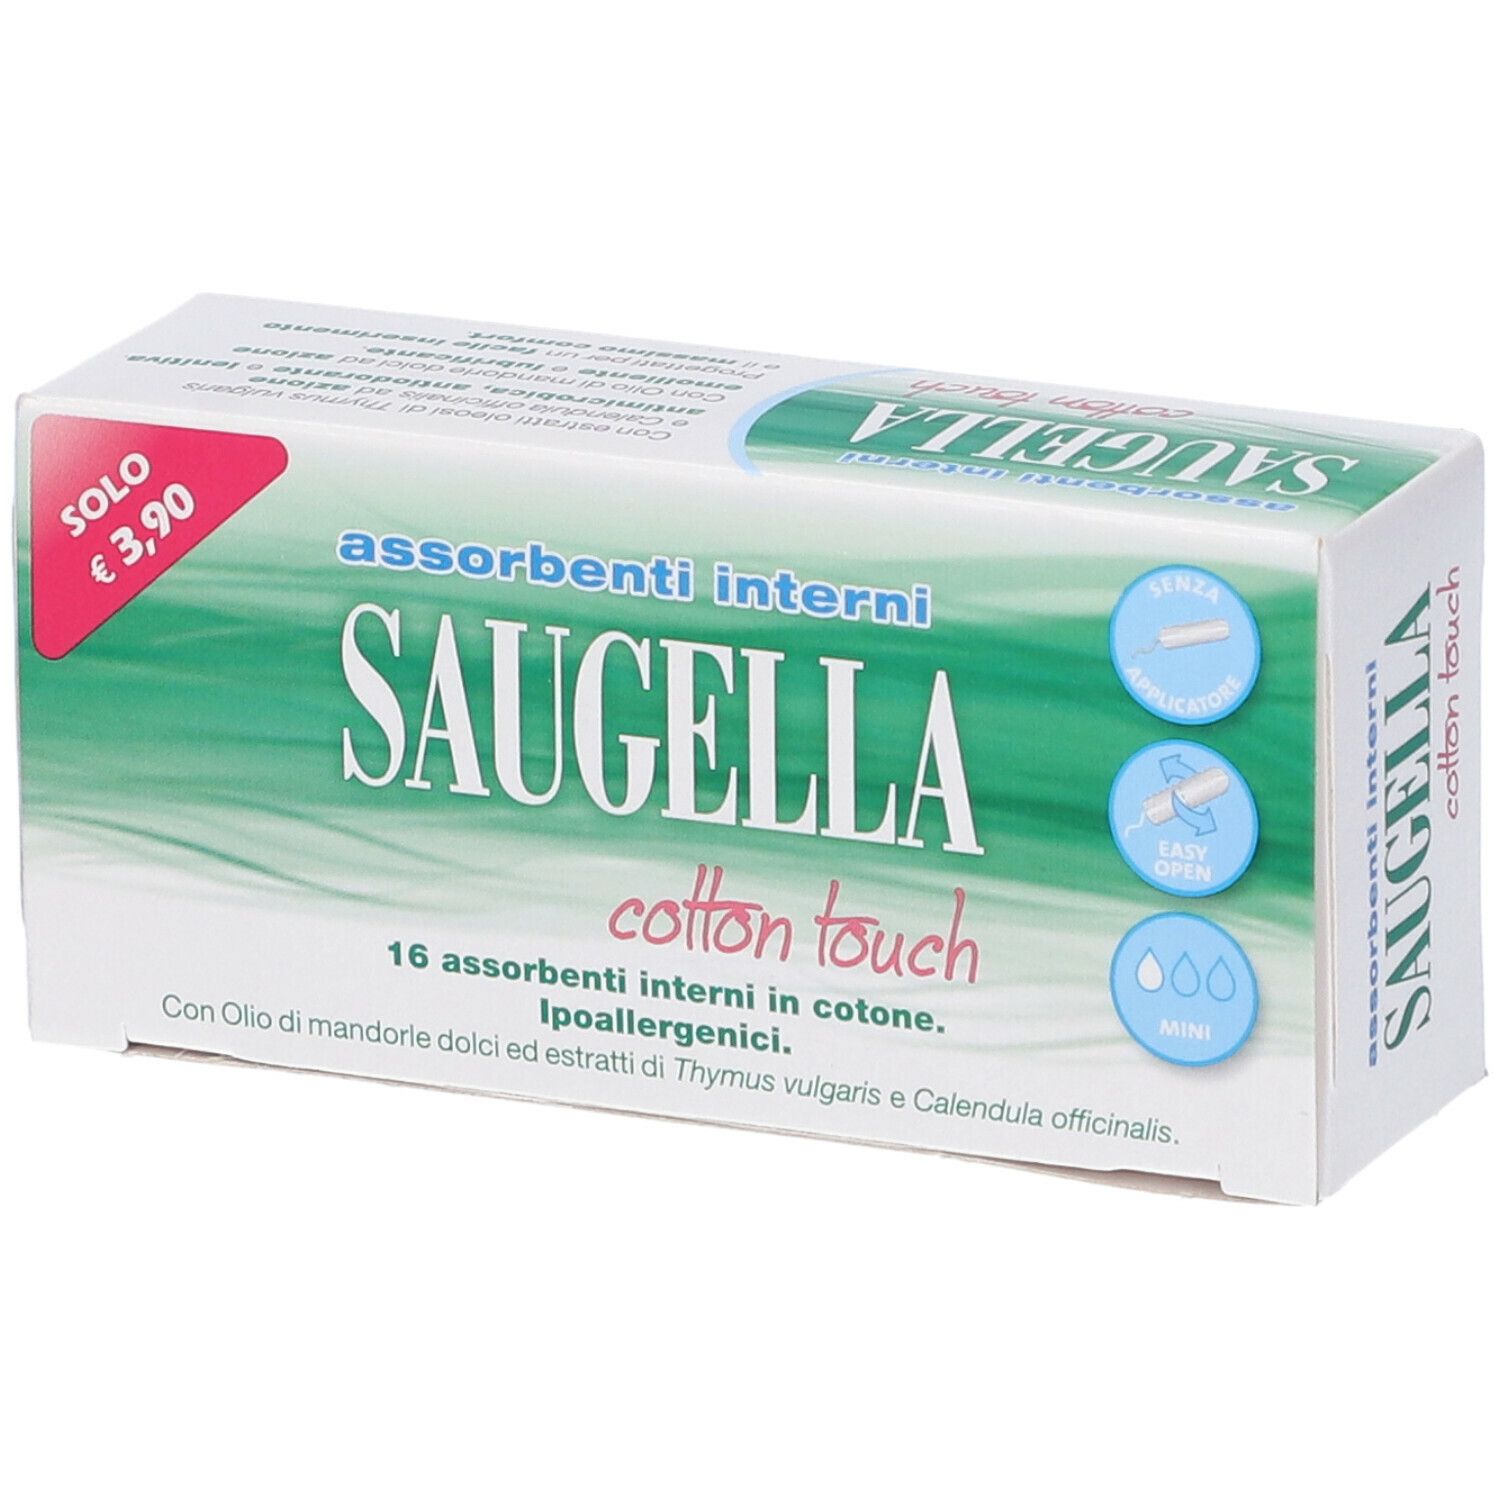 Saugella® Cotton Touch Assorbenti Interni